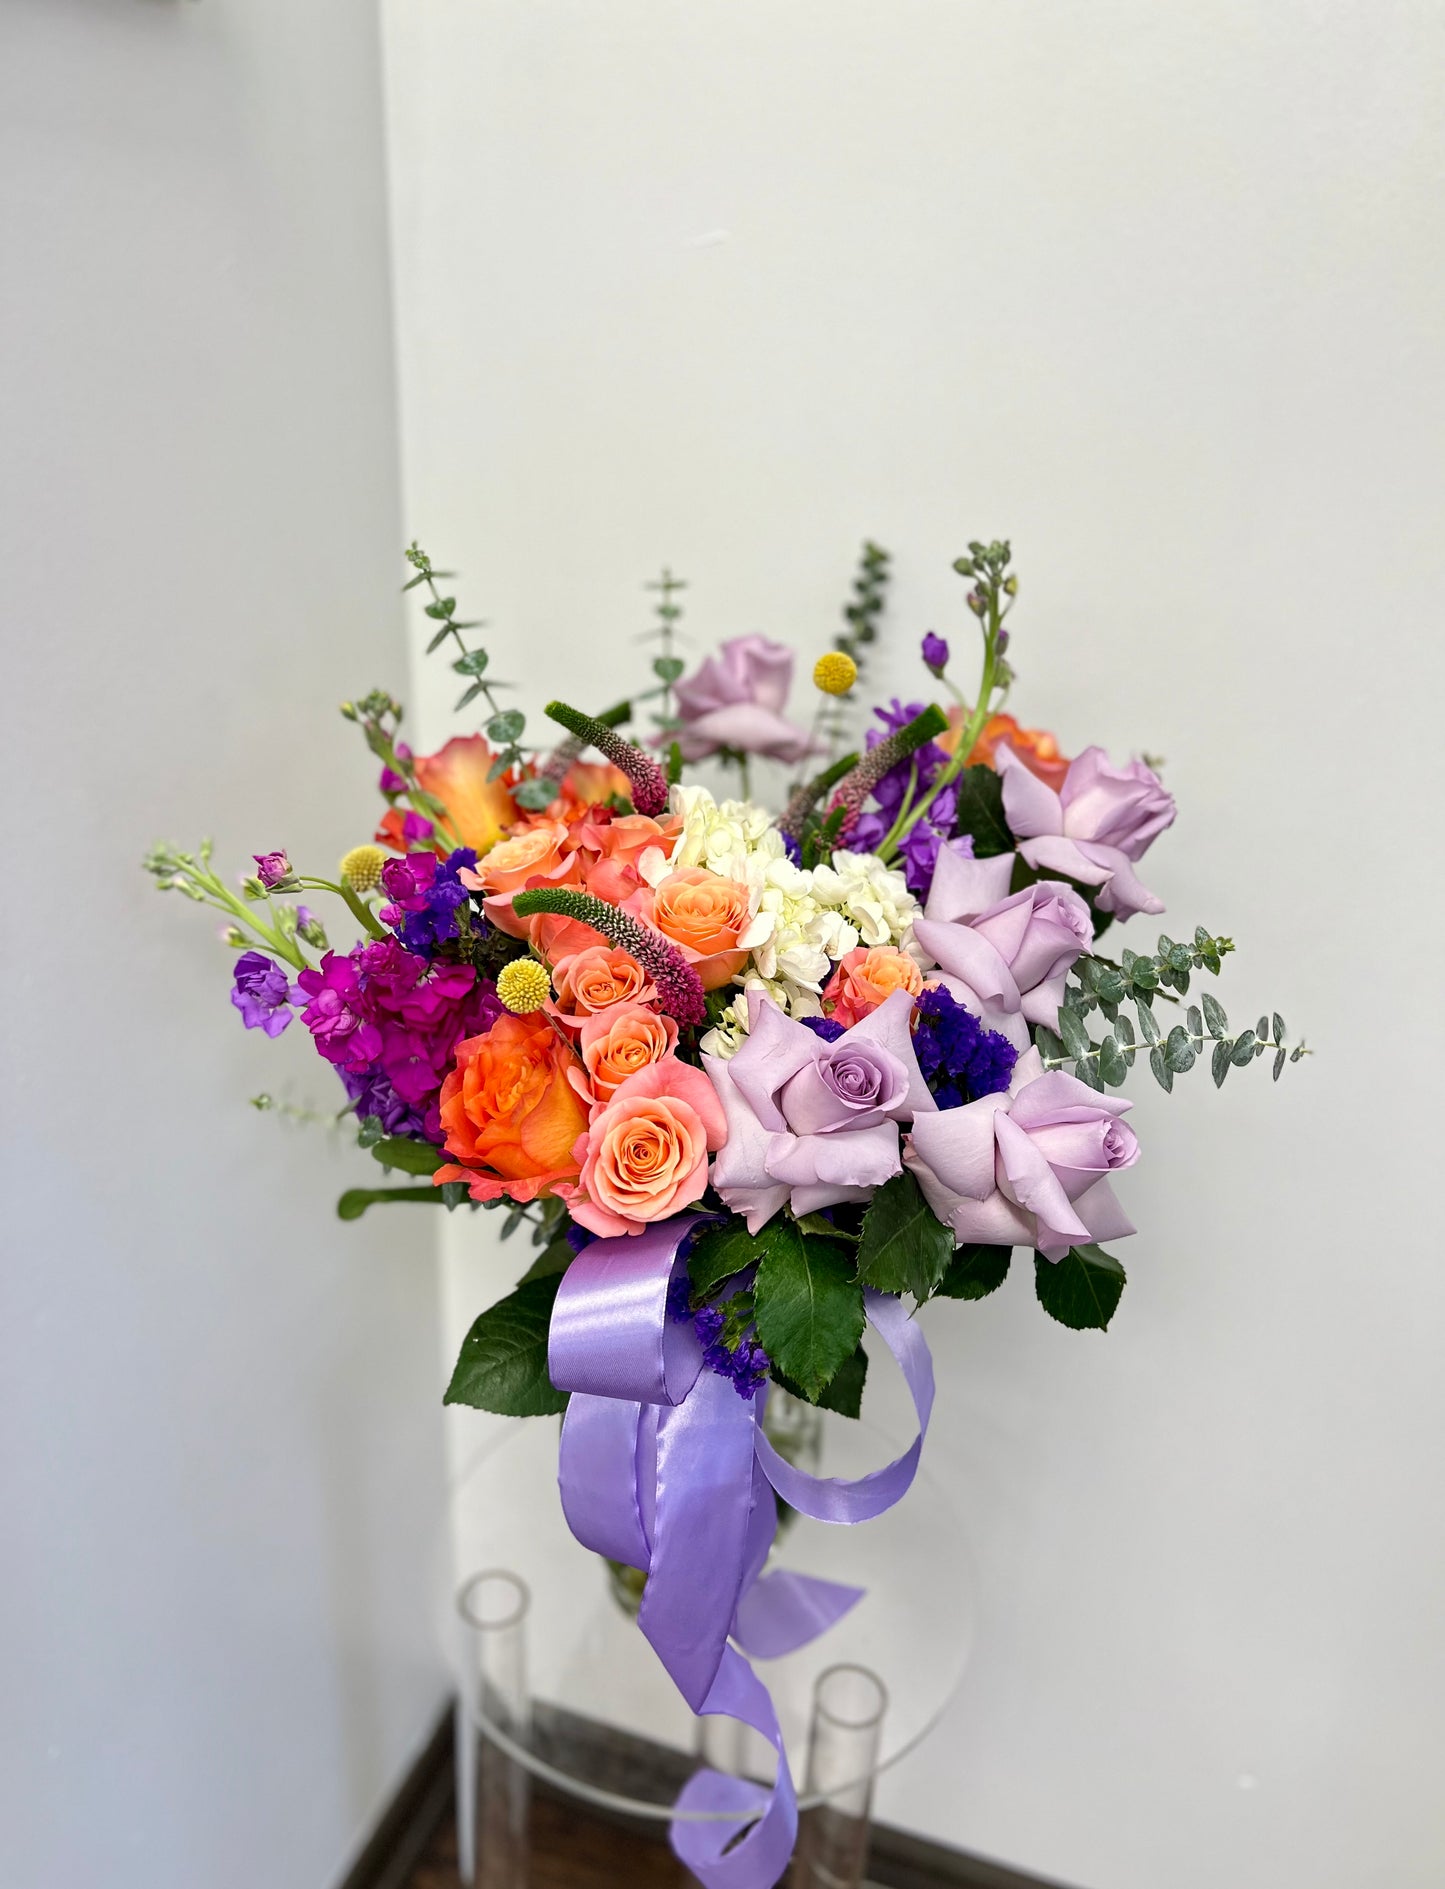 Florist pick vase arrangement - bright colours